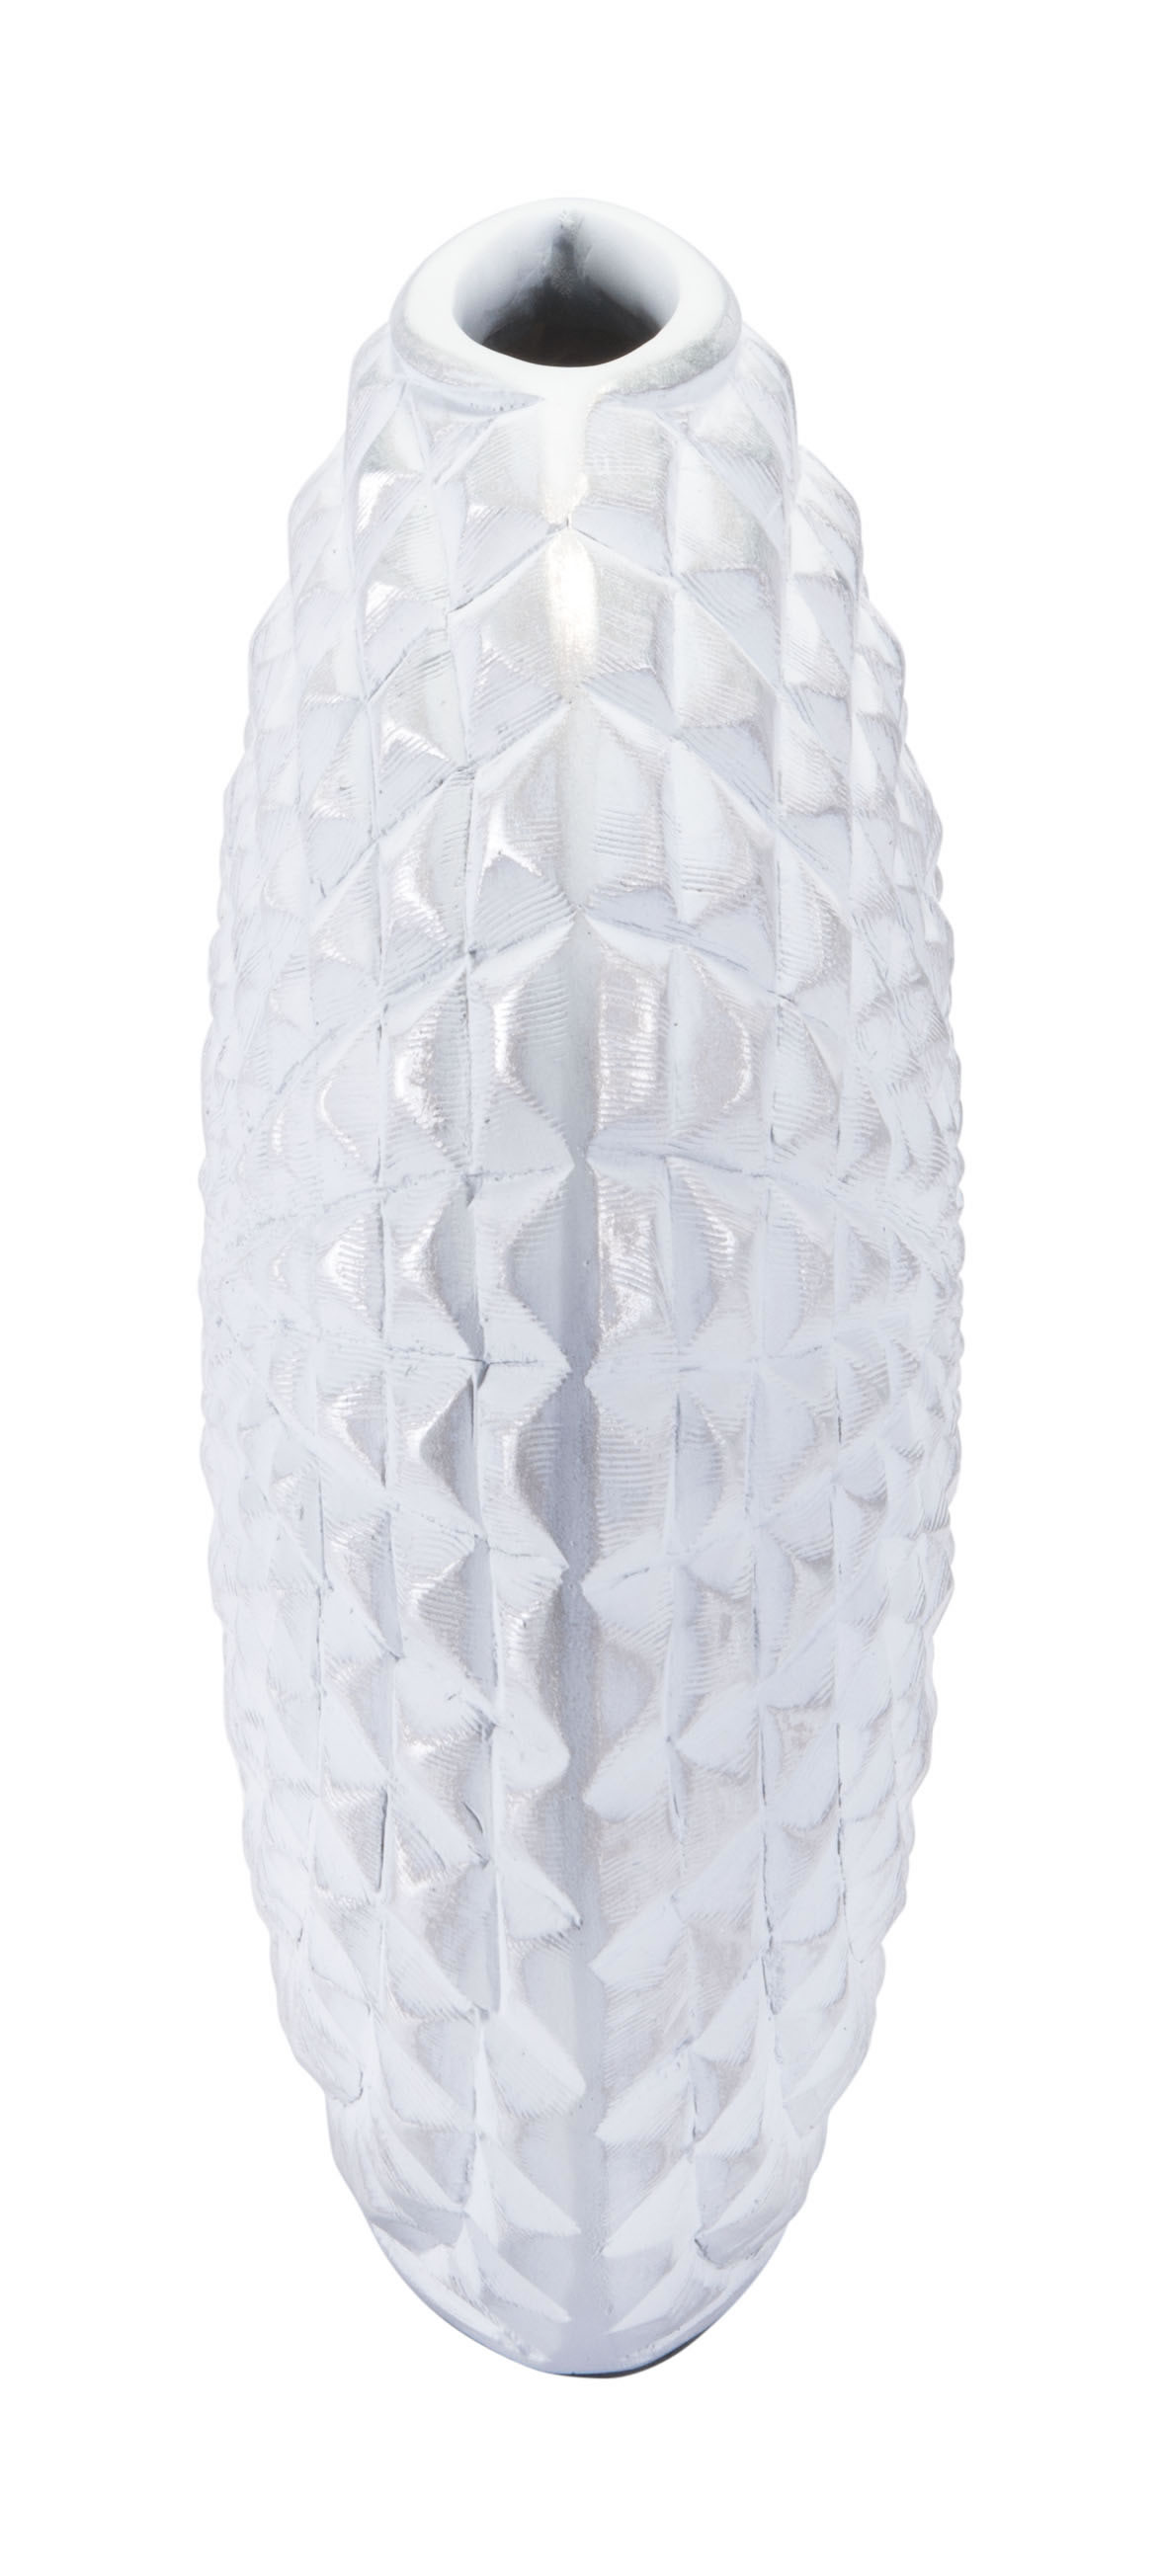 13.8" x 4.5" x 10.6" White, Polyresin, Small Vase